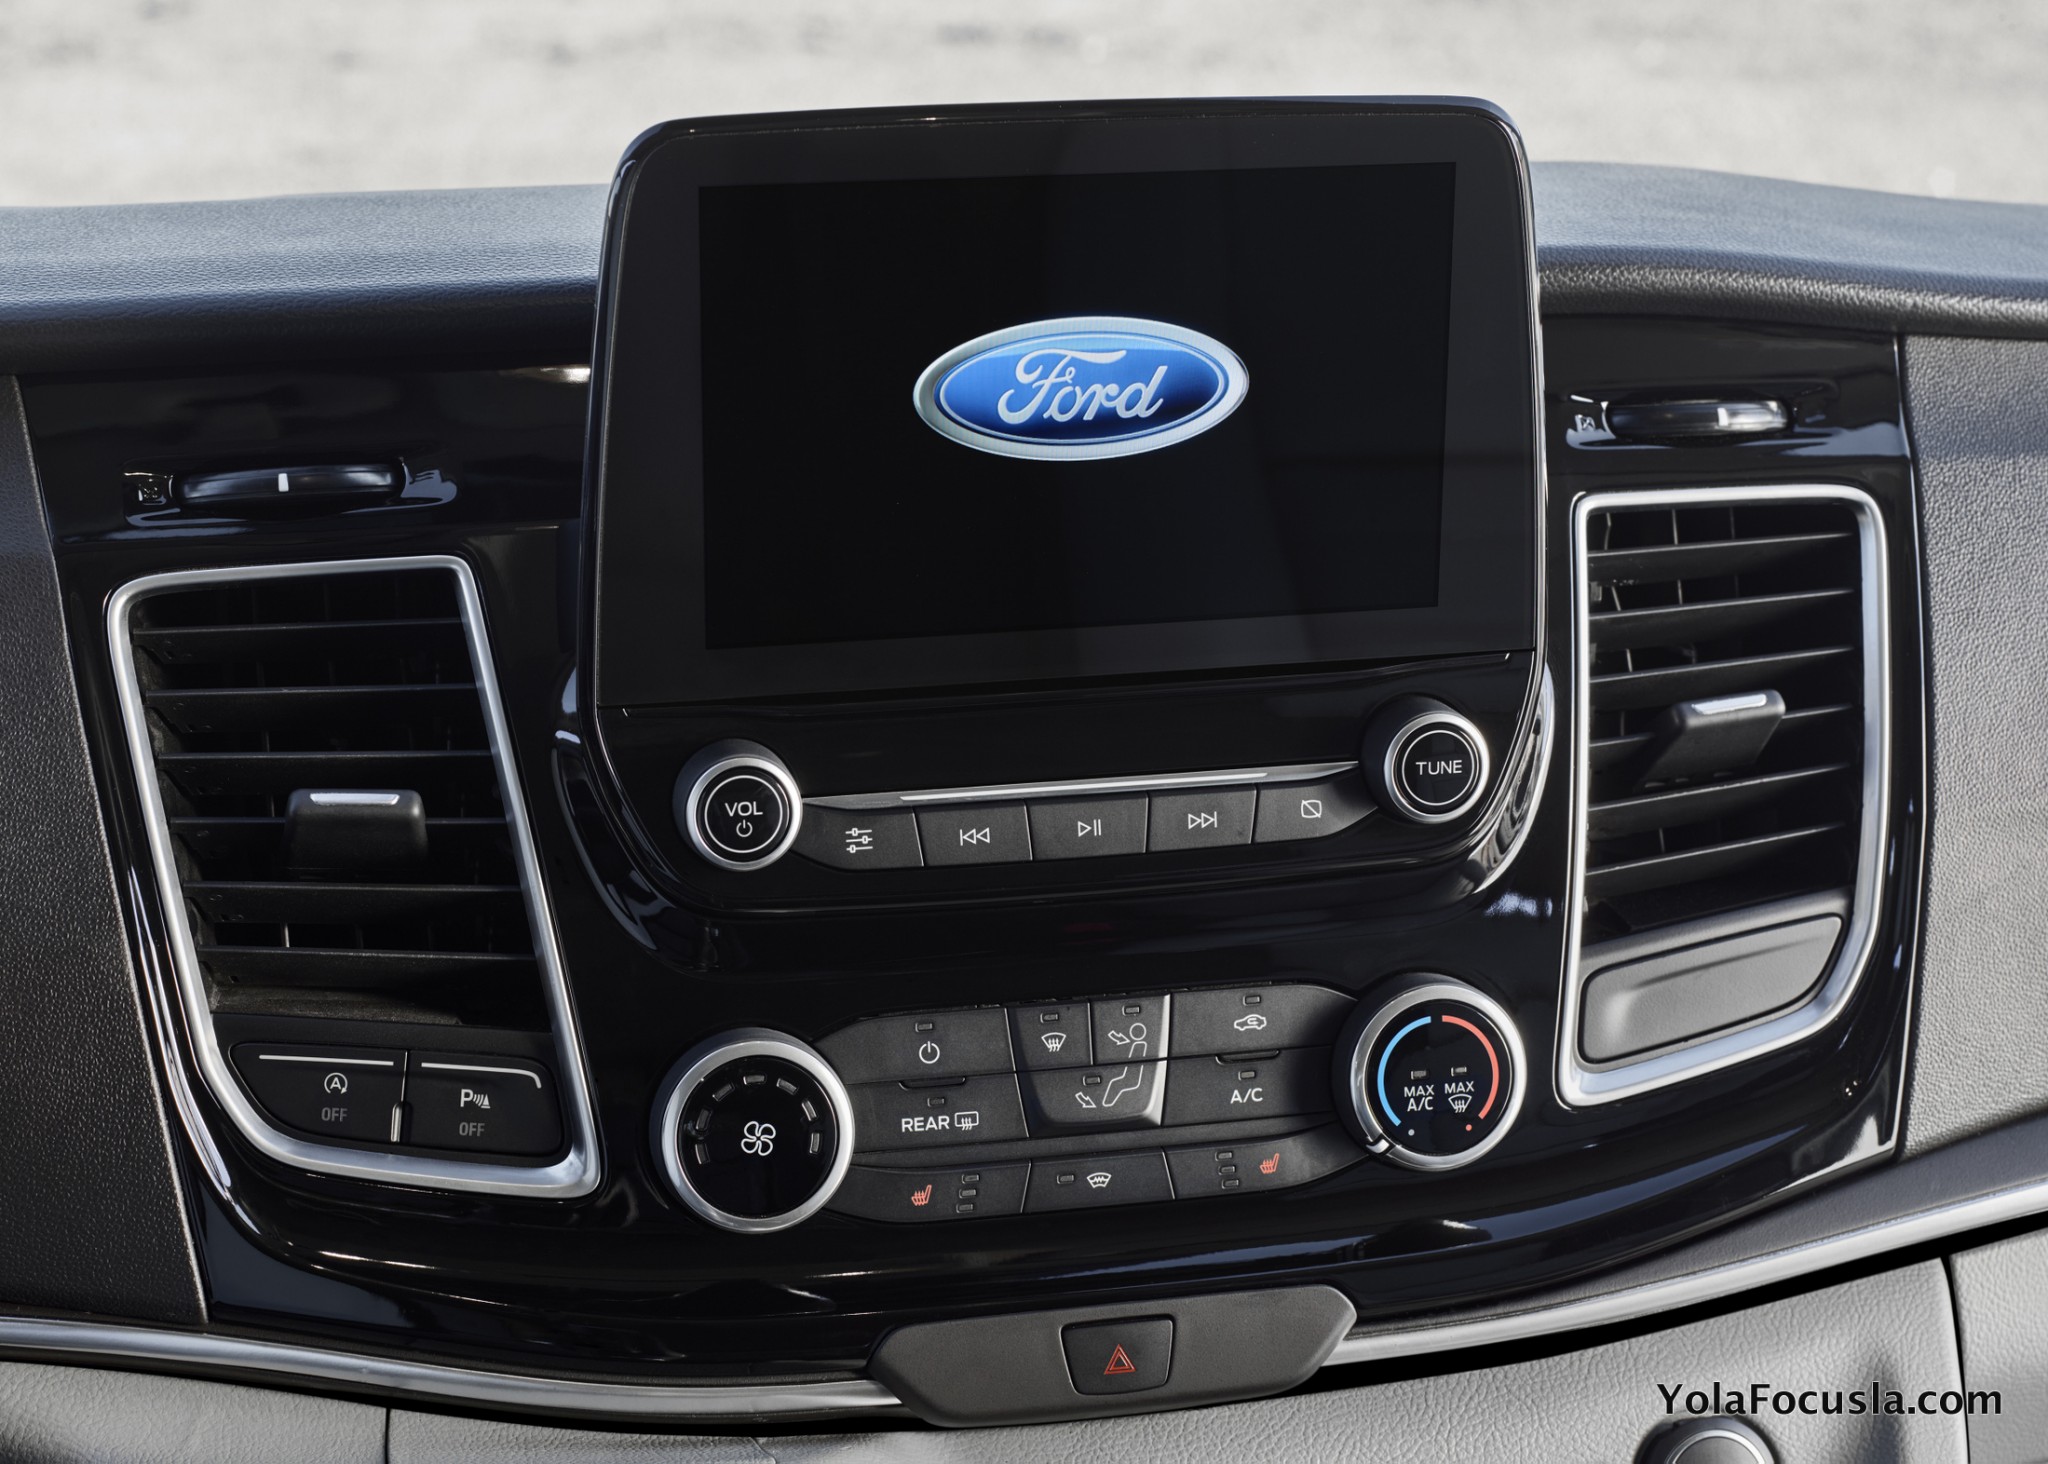 2018 Makyajlı Ford Tourneo Custom Tanıtıldı Yola Focusla